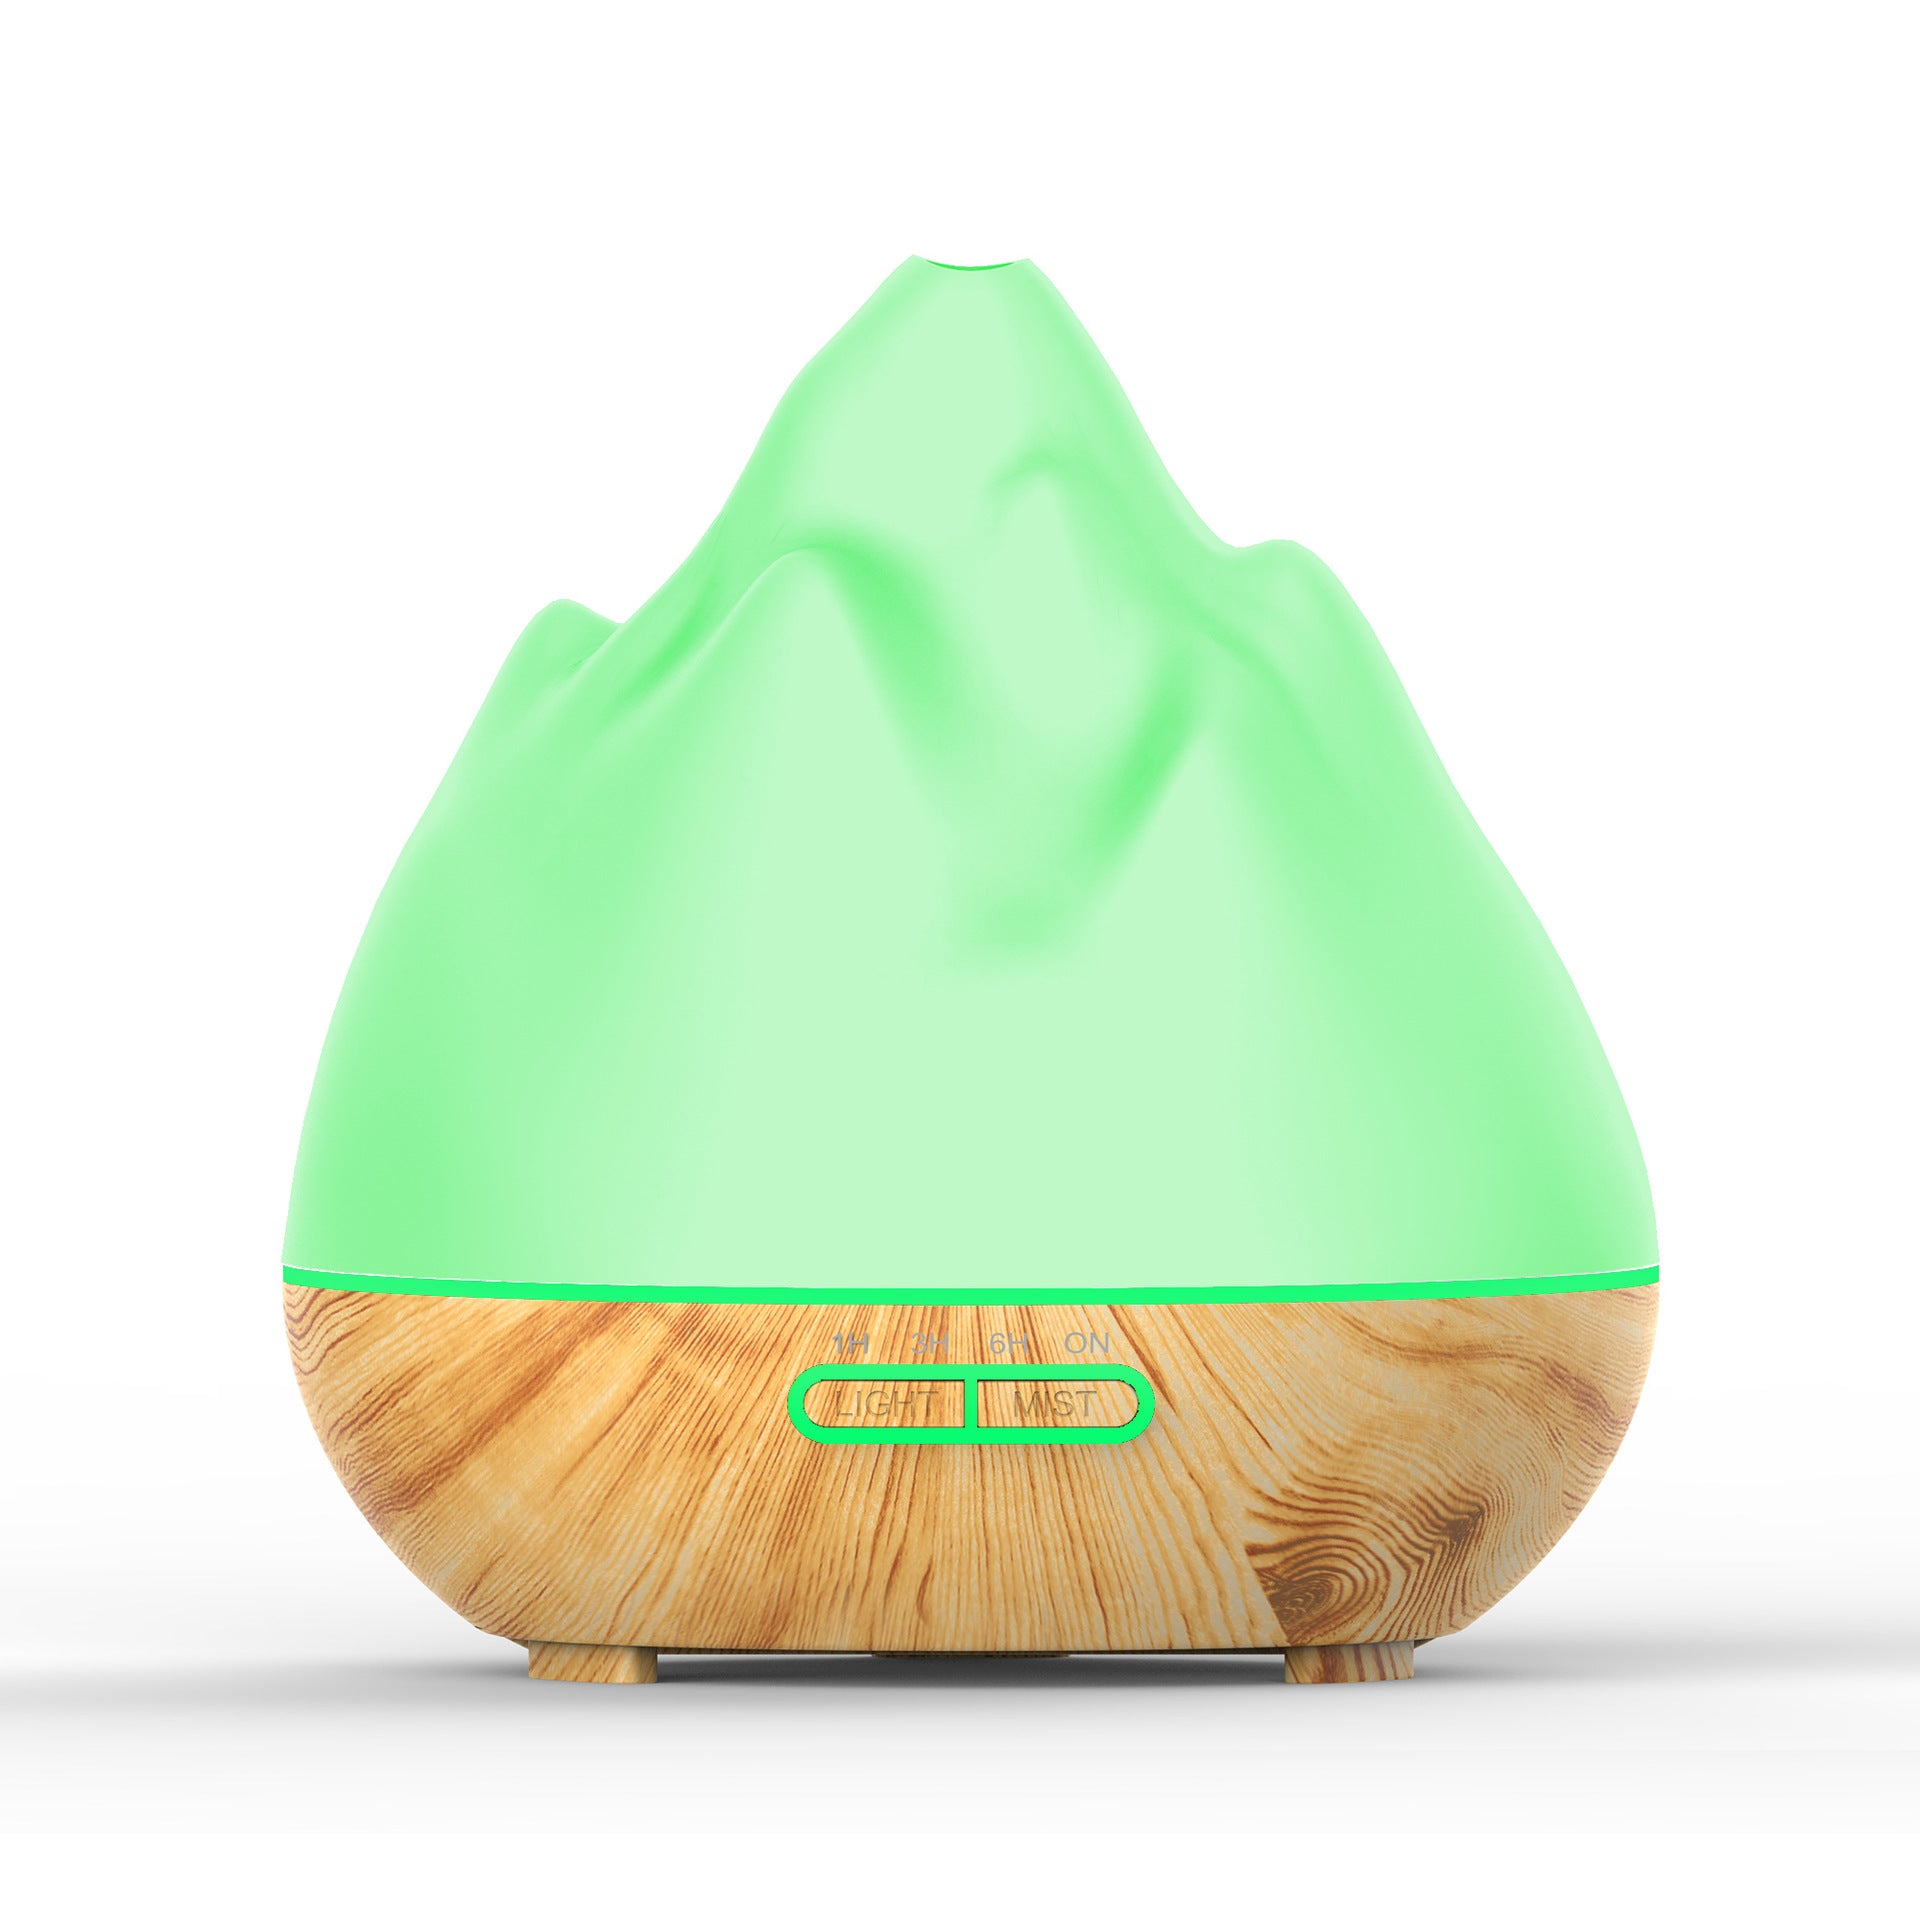 Mountain View Volcano Aroma Diffuser Mini Humidifier